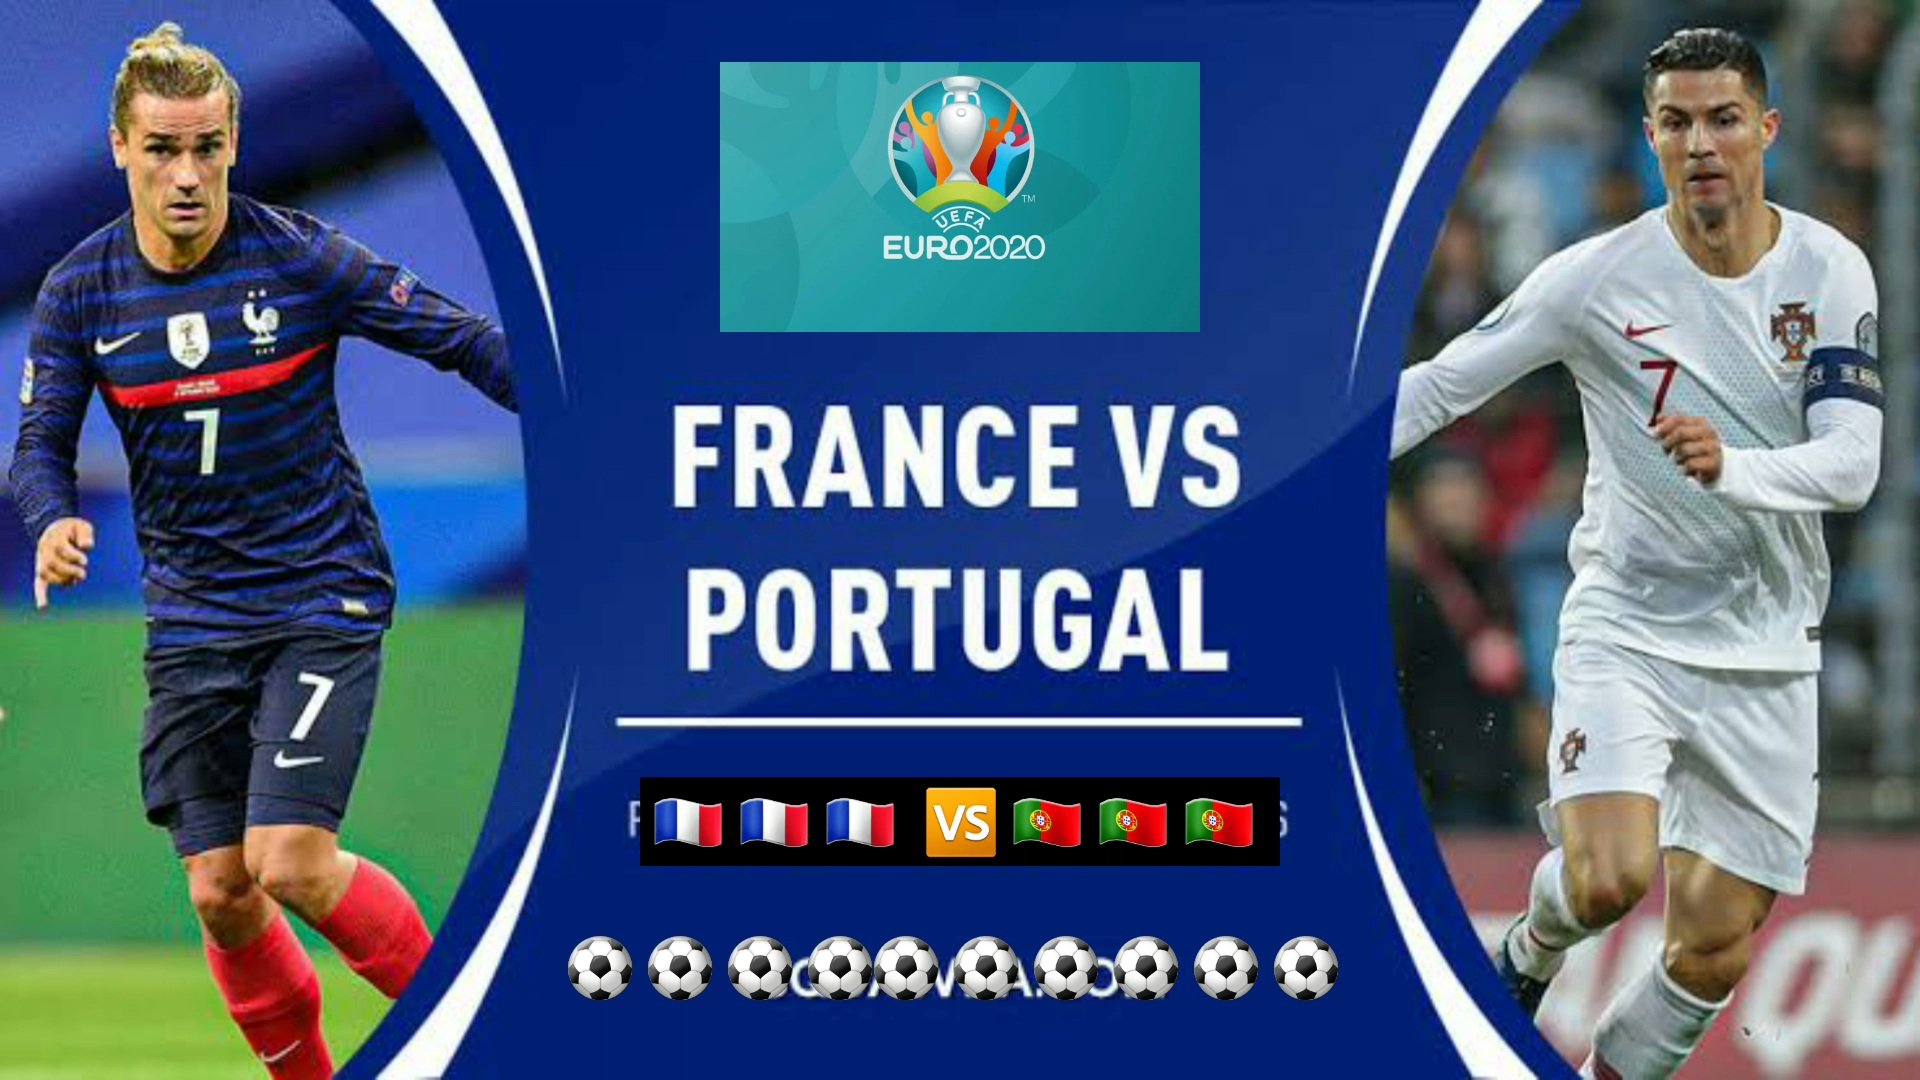 Portugal vs france 2021